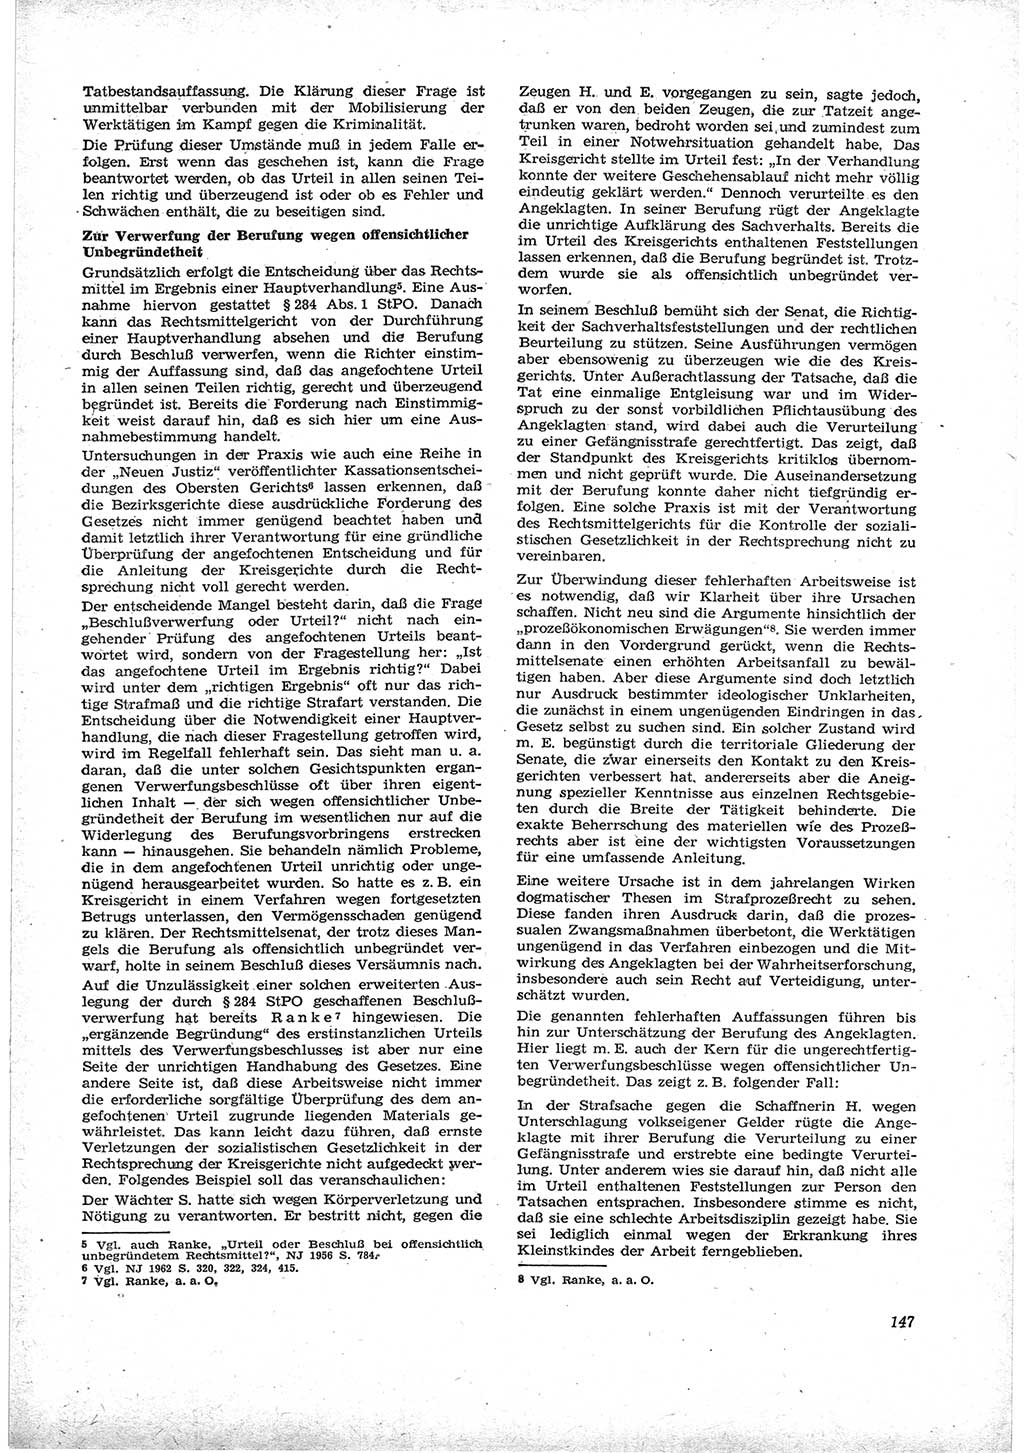 Neue Justiz (NJ), Zeitschrift für Recht und Rechtswissenschaft [Deutsche Demokratische Republik (DDR)], 17. Jahrgang 1963, Seite 147 (NJ DDR 1963, S. 147)